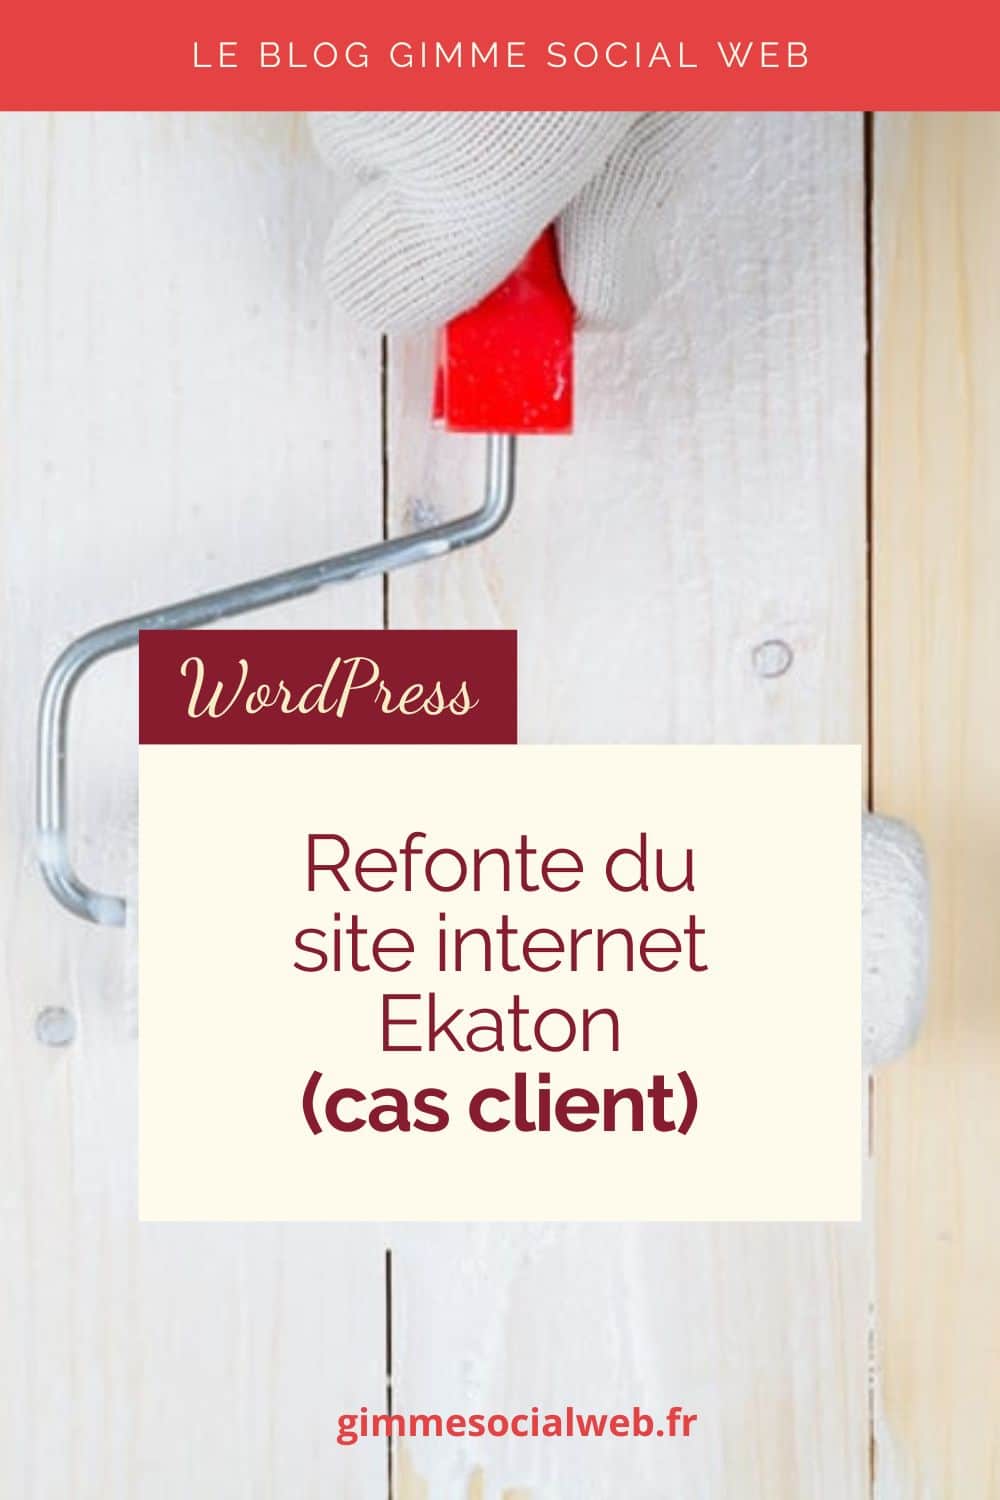 Refonte du site internet Ekaton (cas client)